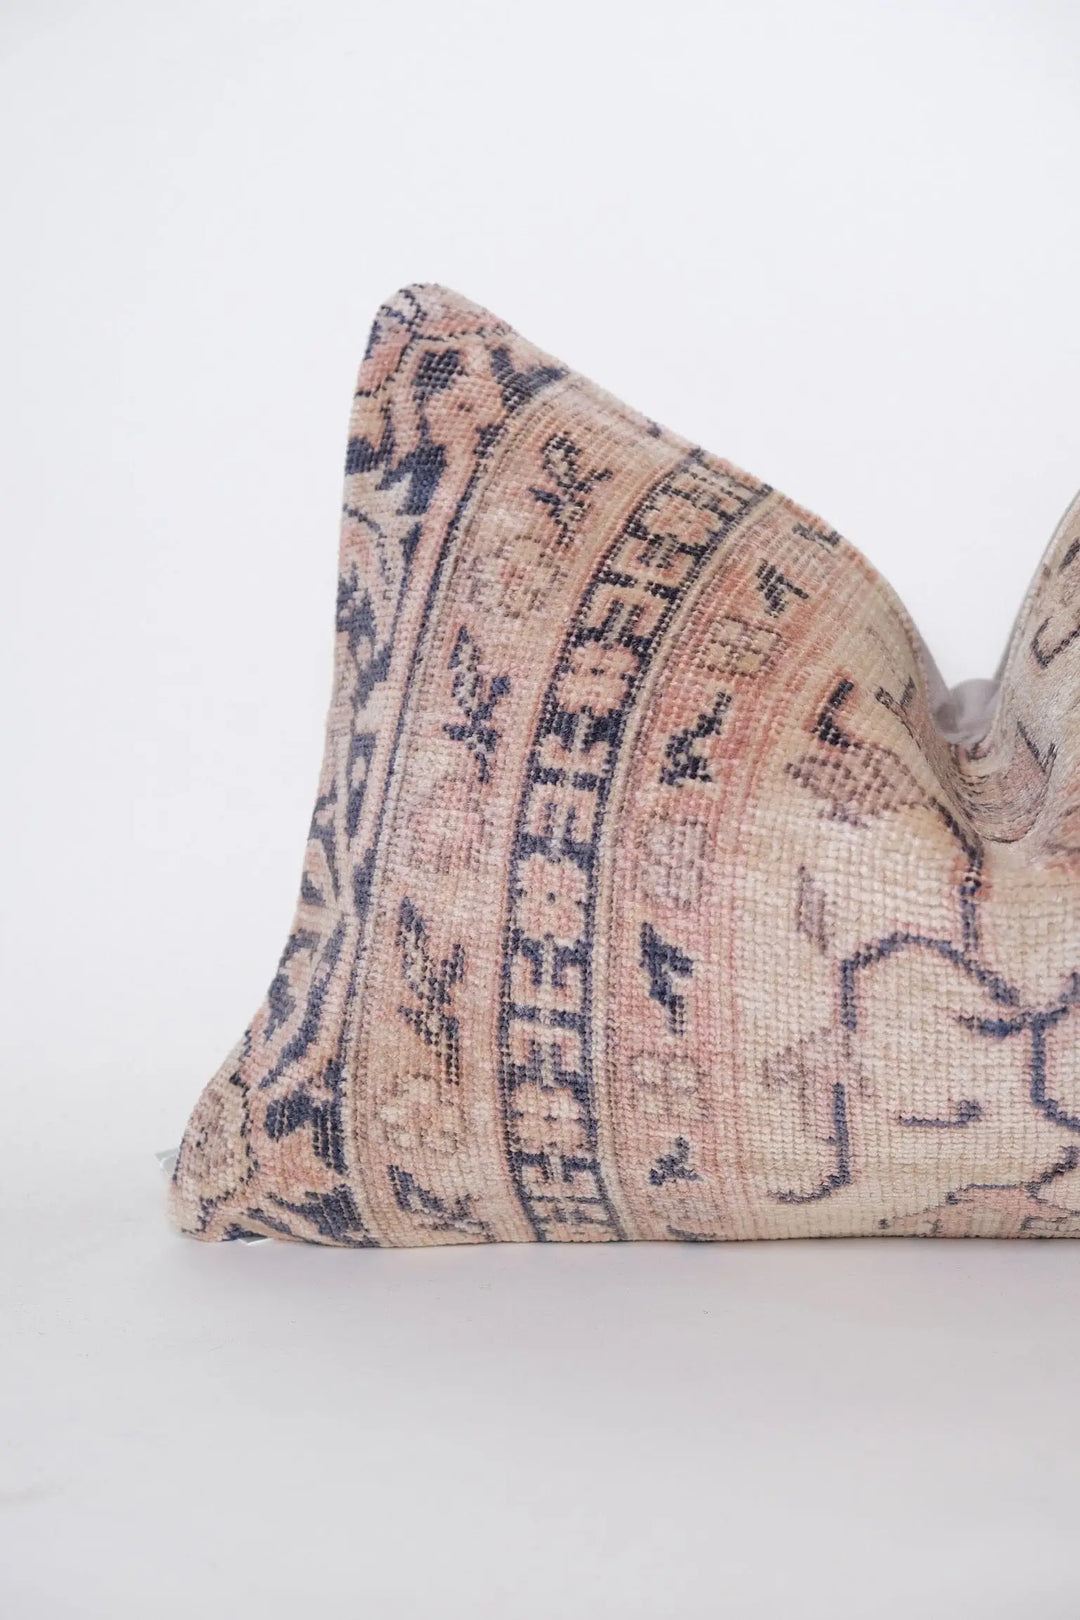 Adnan Turkish Vintage Lumbar Pillow Cover